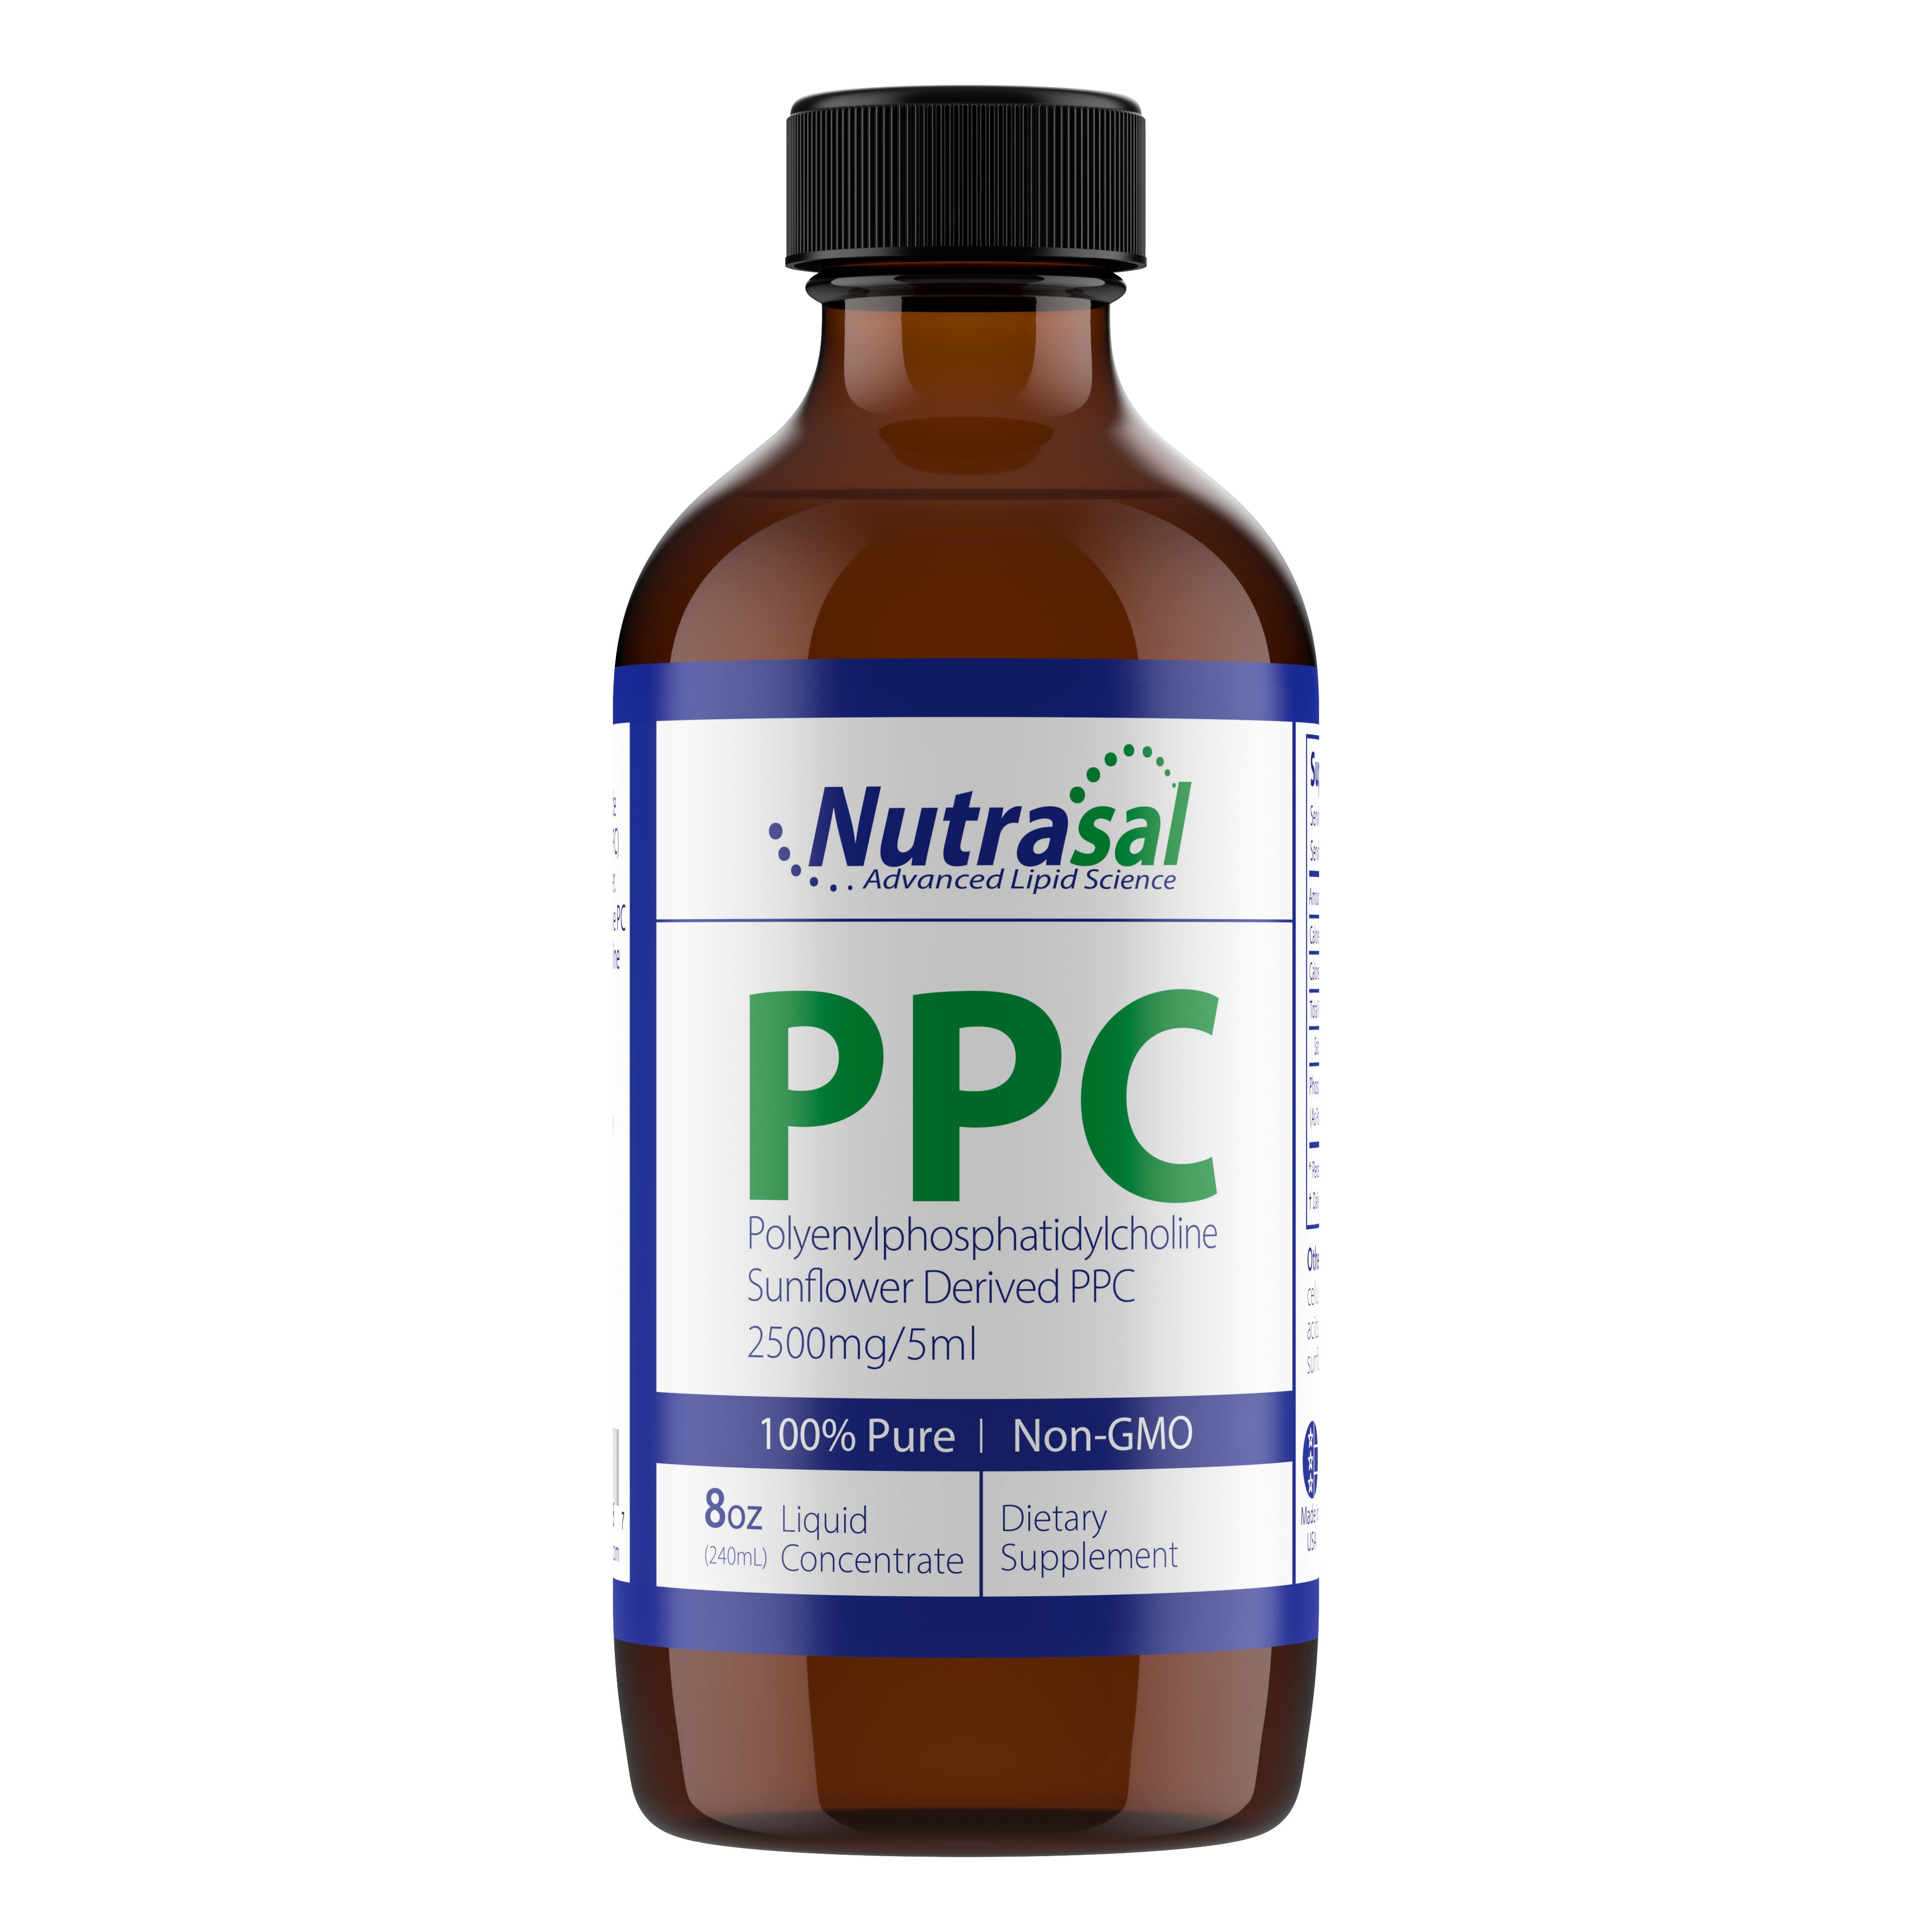 Concentré liquide PhosChol-8 oz. PPC de qualité pharmaceutique